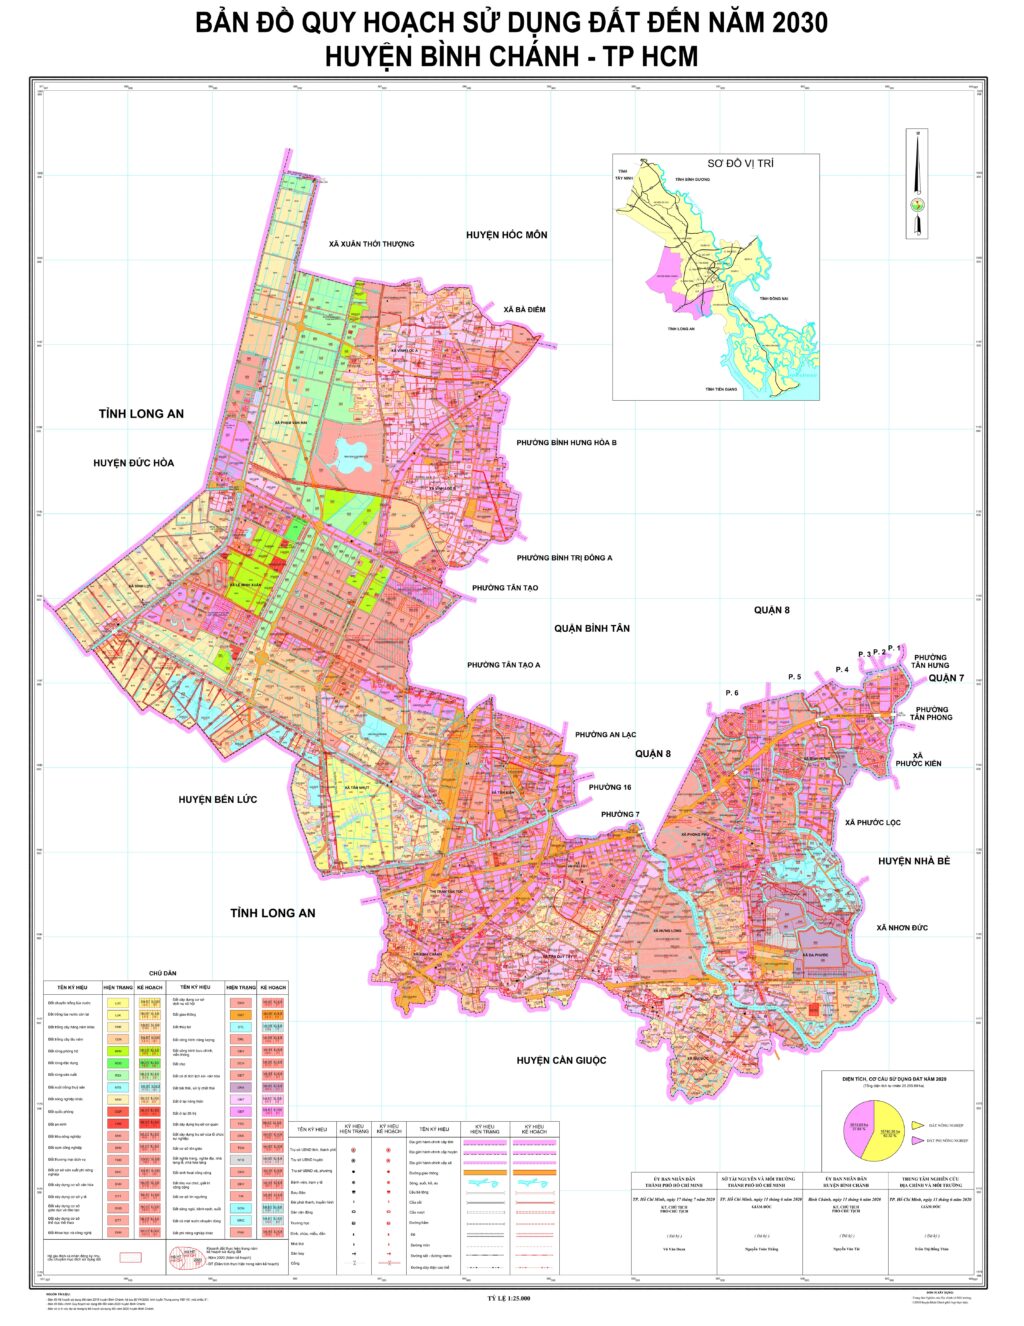 Bản đồ Sử dụng Đất Huyện Bình Chánh 2024 đem lại cho người xem một cái nhìn toàn diện về sự phát triển, về quy hoạch đất đai chi tiết và chính xác. Đây là công cụ hữu ích để giúp quản lý, phát triển đất đai của cả Huyện, nhằm xây dựng một Bình Chánh đẹp, tiến bộ.